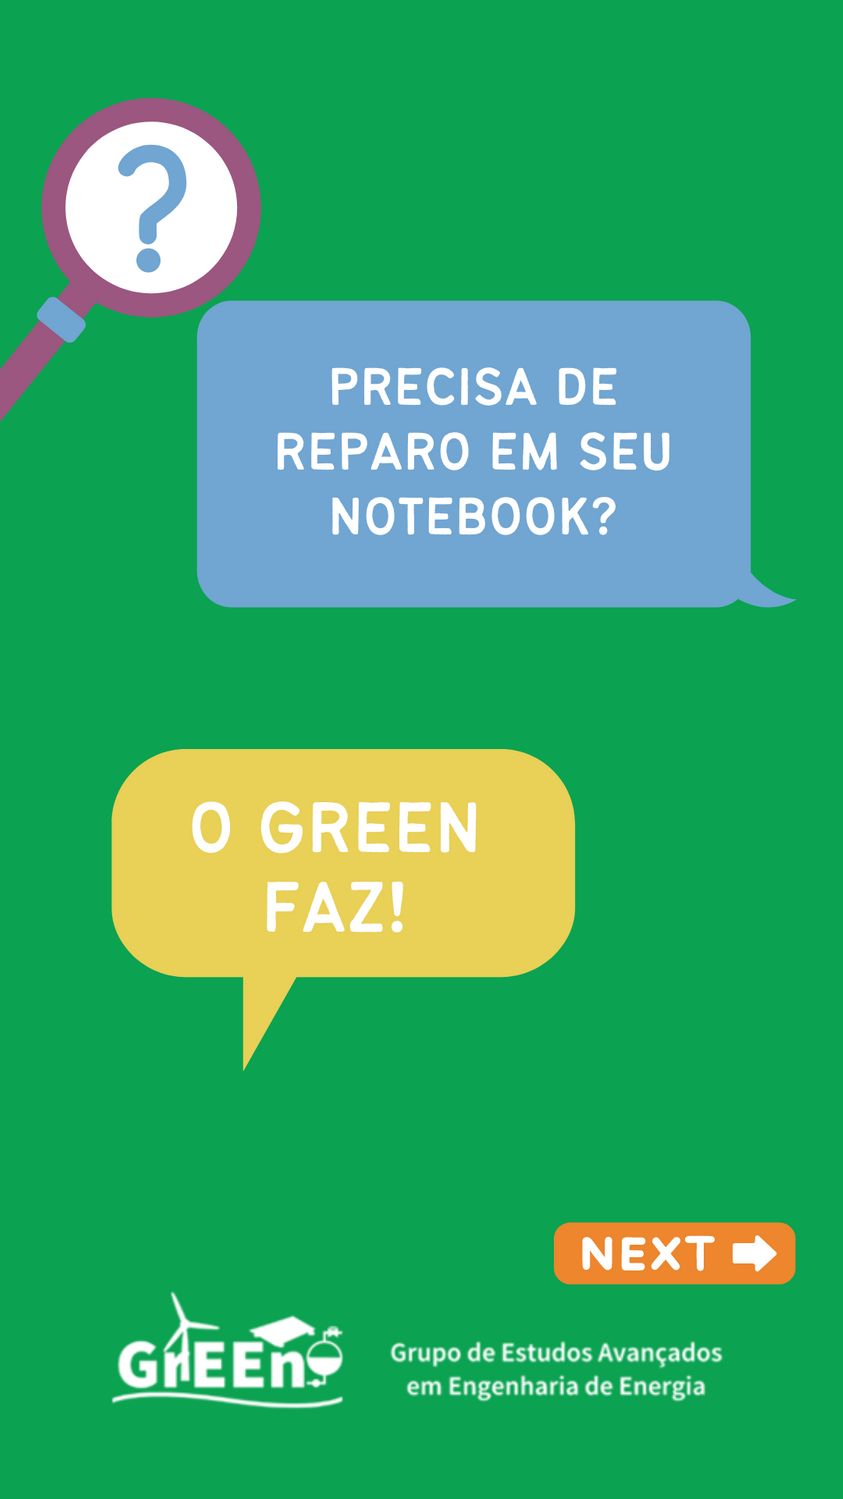 Unipampa promove projeto de conserto e cedência de notebook no Campus Bagé (Imagem: divulgação).